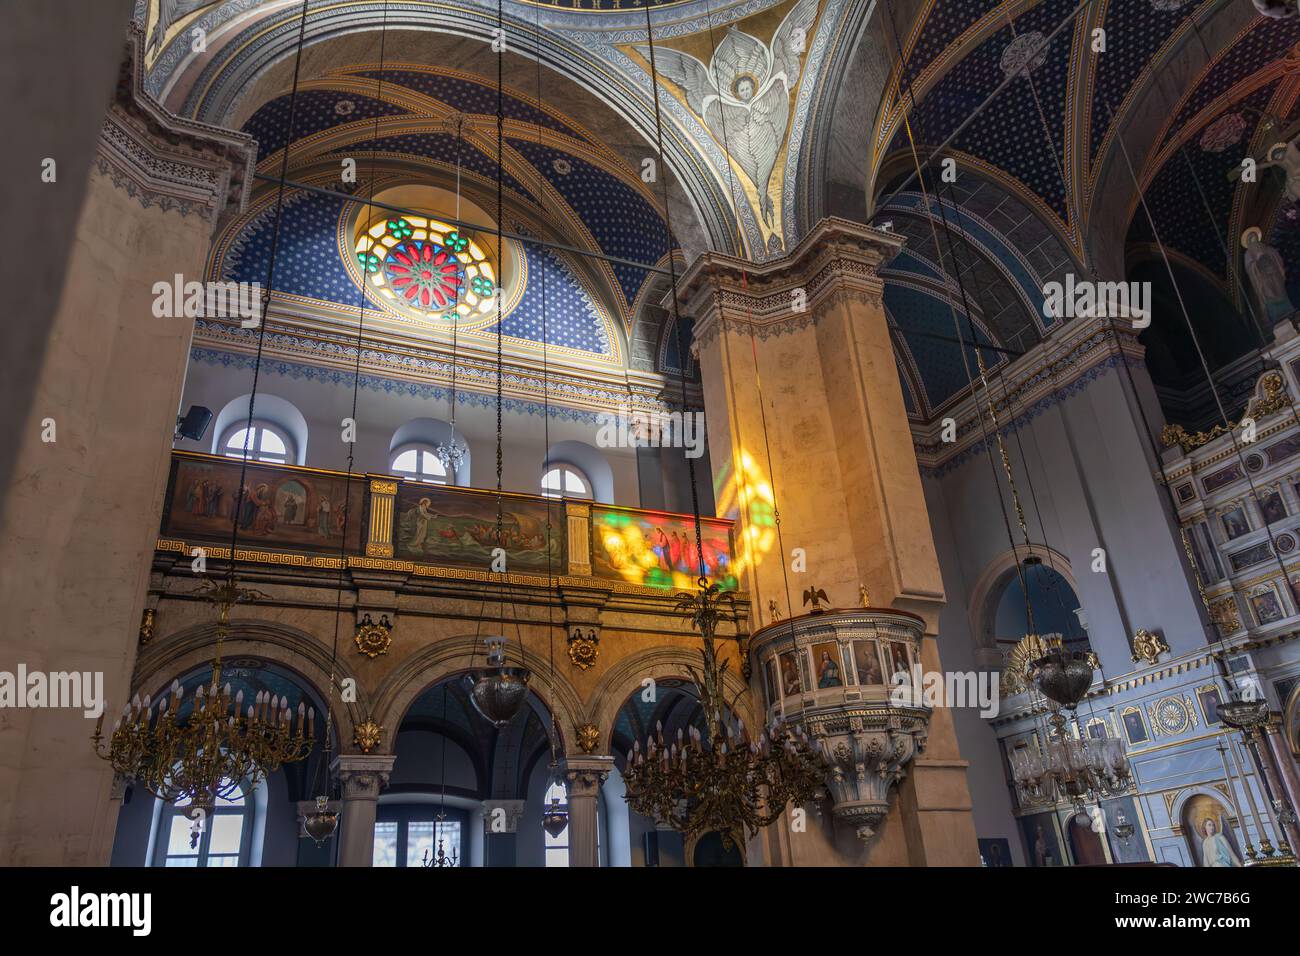 Les fresques et l'aspect architectural de l'intérieur de l'église orthodoxe grecque Hagia Triada située à Taksim, Istanbul, Turquie. Banque D'Images